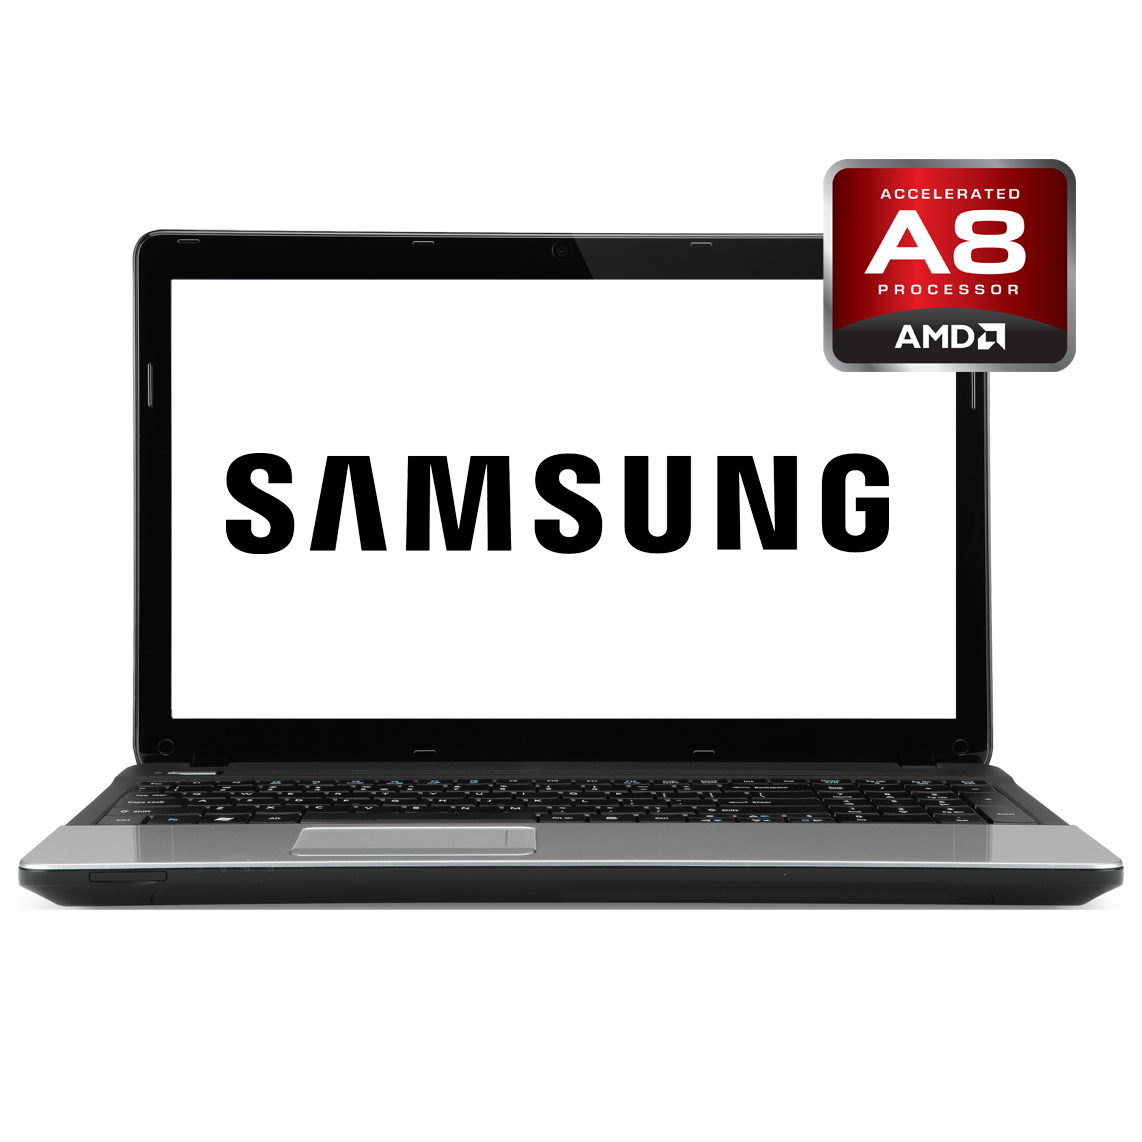 Samsung - 15 inch AMD A8